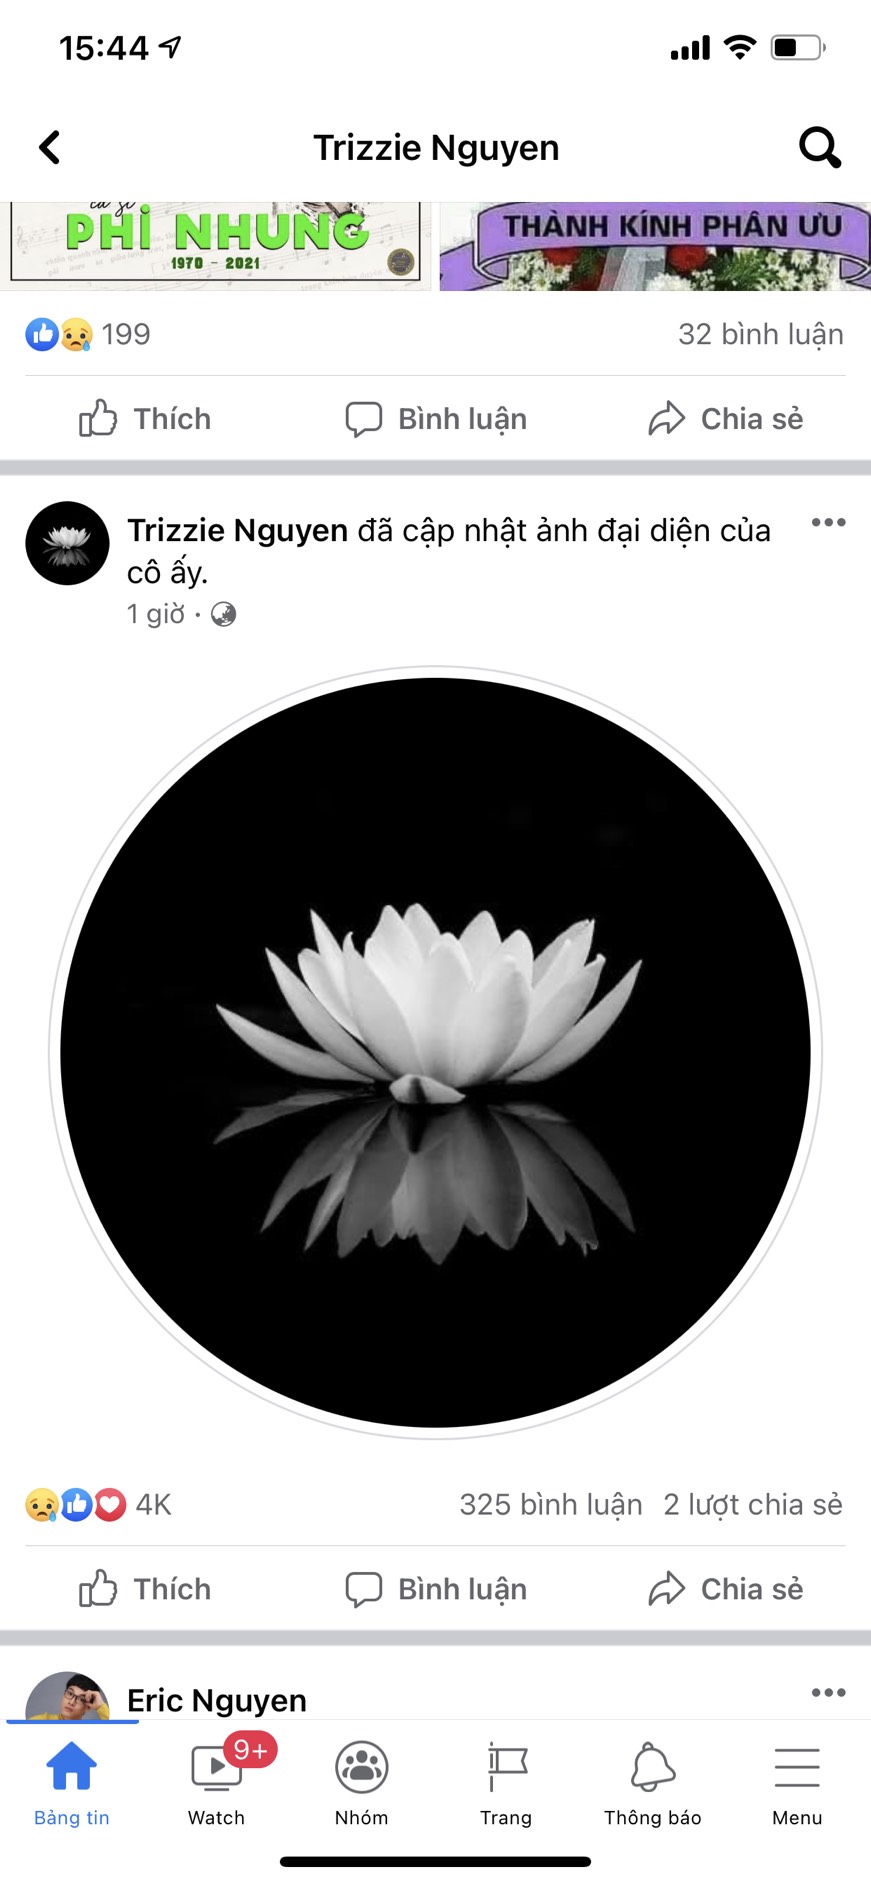 Trizzie Phương Trinh cũng có động thái y hệt, thể hiện sự tang thương